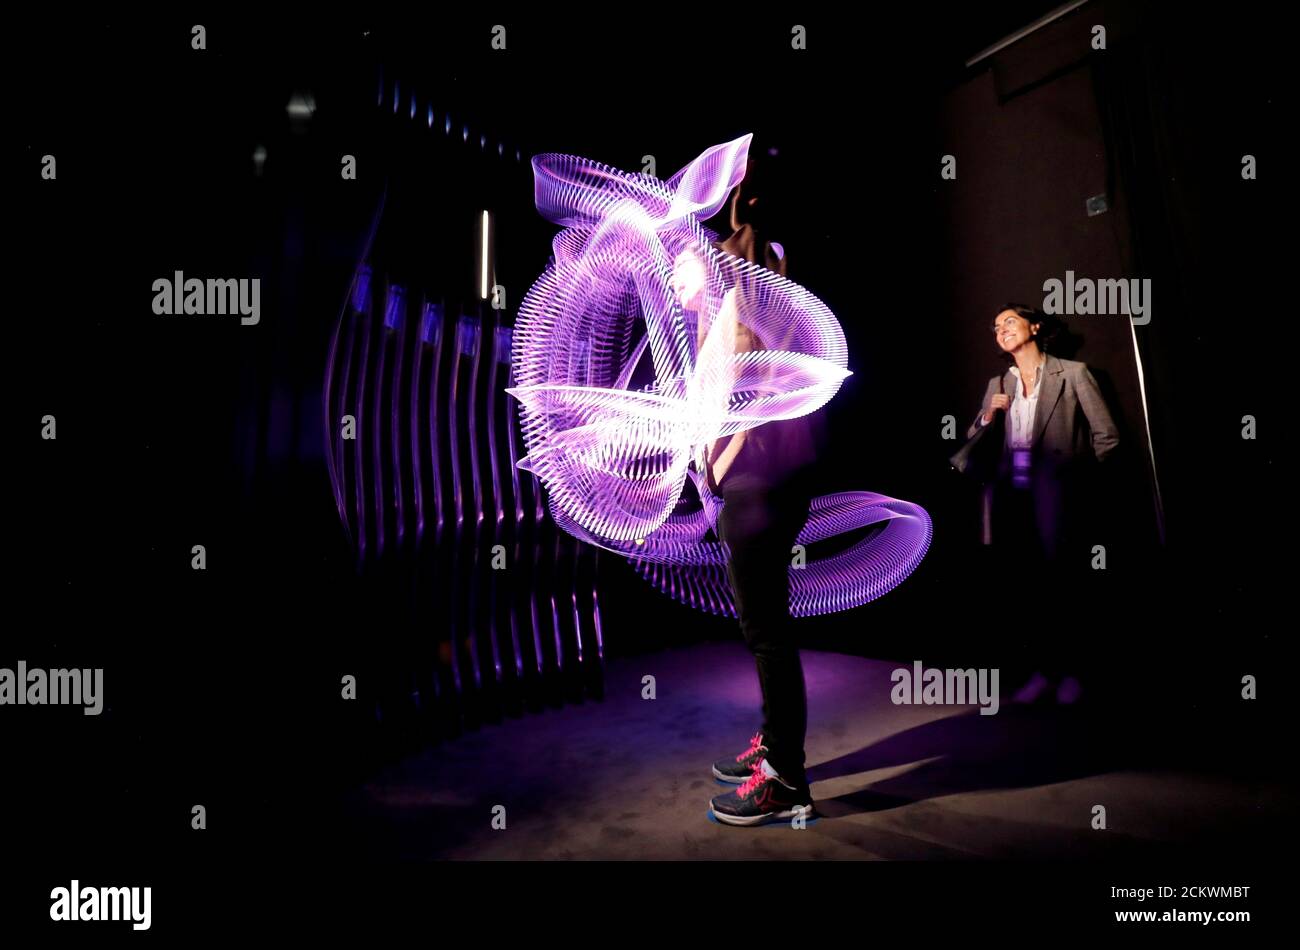 Ein Besucher nimmt an der Galaxy Lightwave Experience im Samsung-Stand auf dem Mobile World Congress in Barcelona, Spanien, 26. Februar 2019 Teil. REUTERS/Rafael Marchante Stockfoto